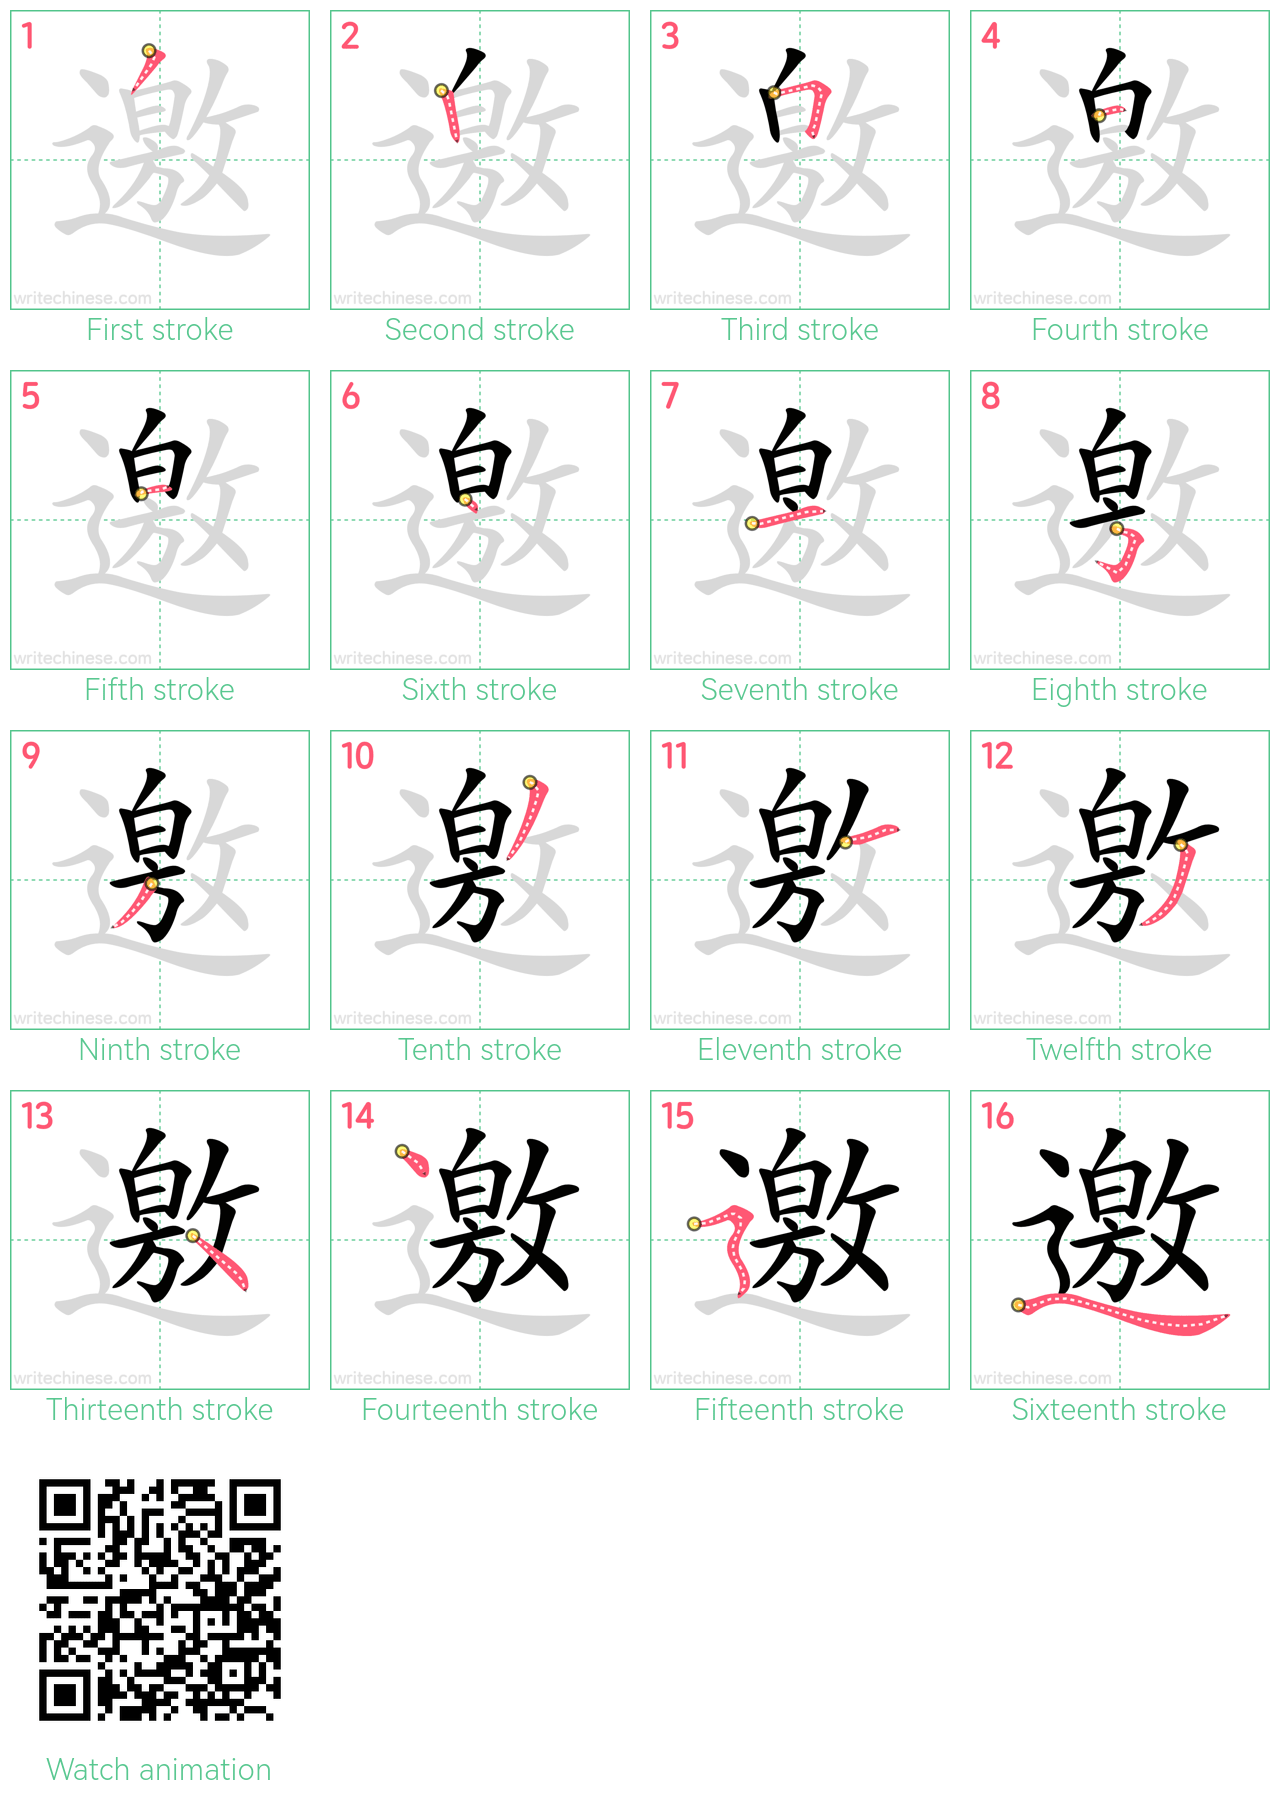 邀 step-by-step stroke order diagrams